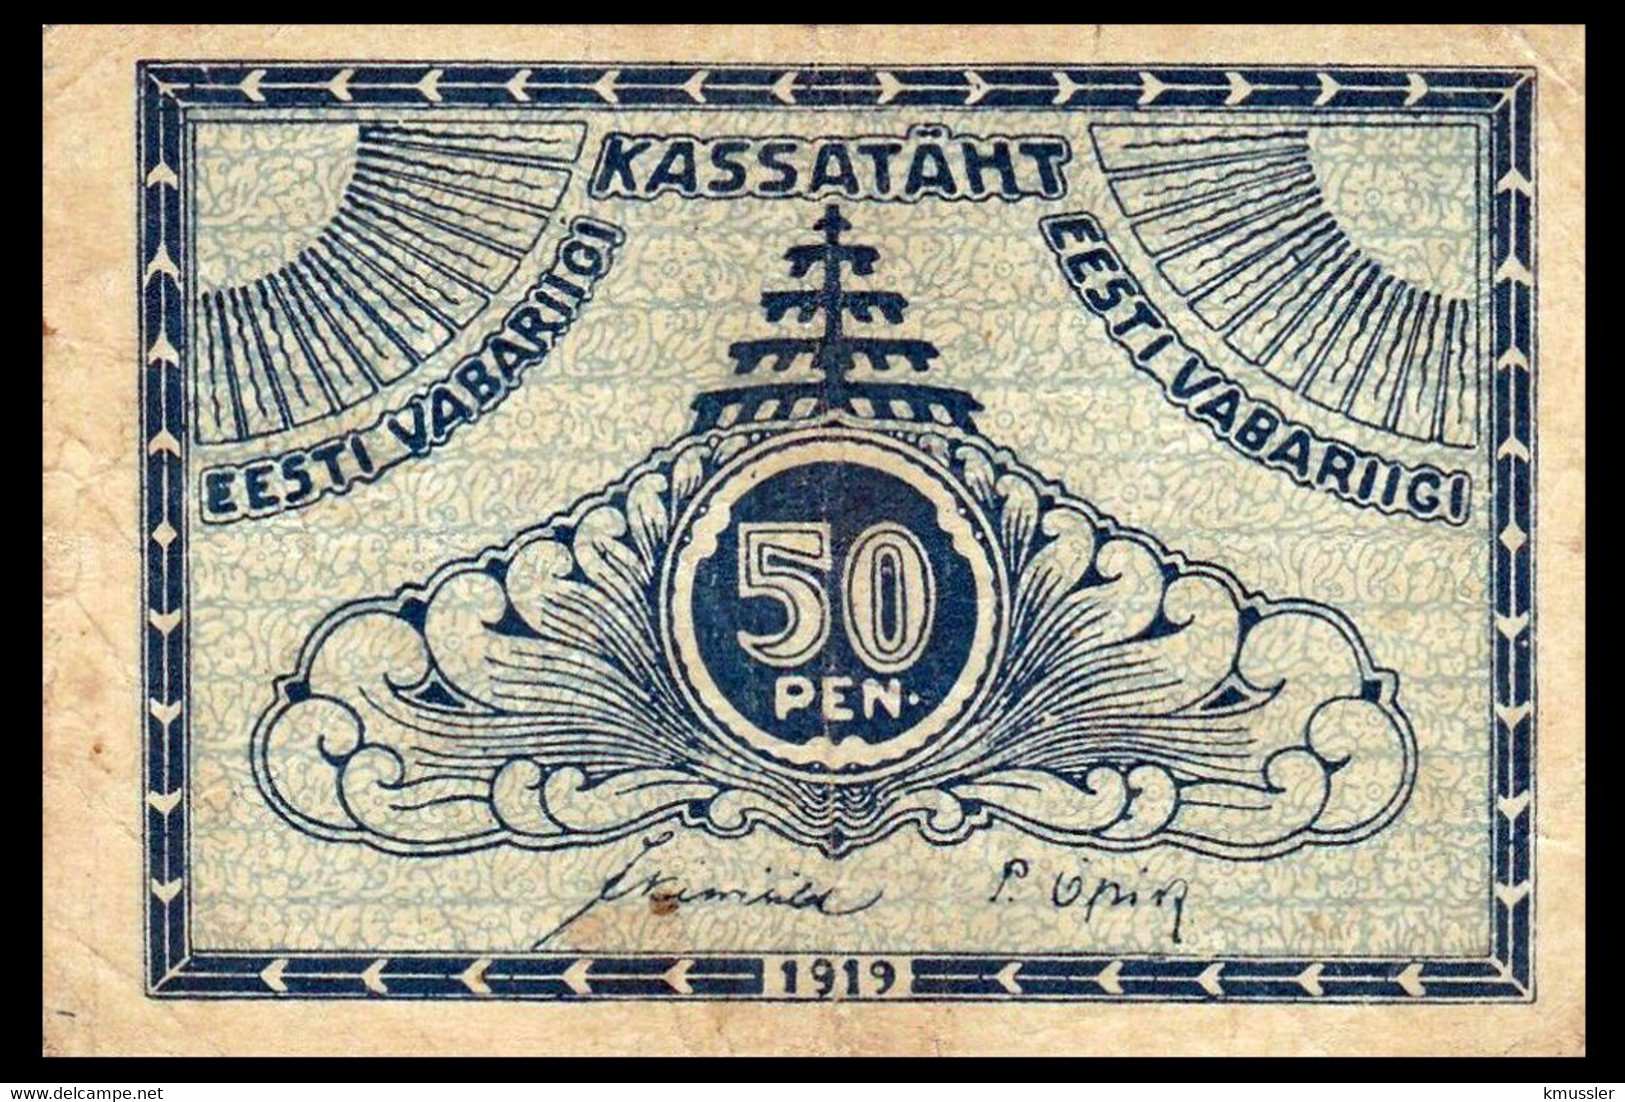 # # # Banknote Estland (Esti) 50 Penni 1919 # # # - Estonia